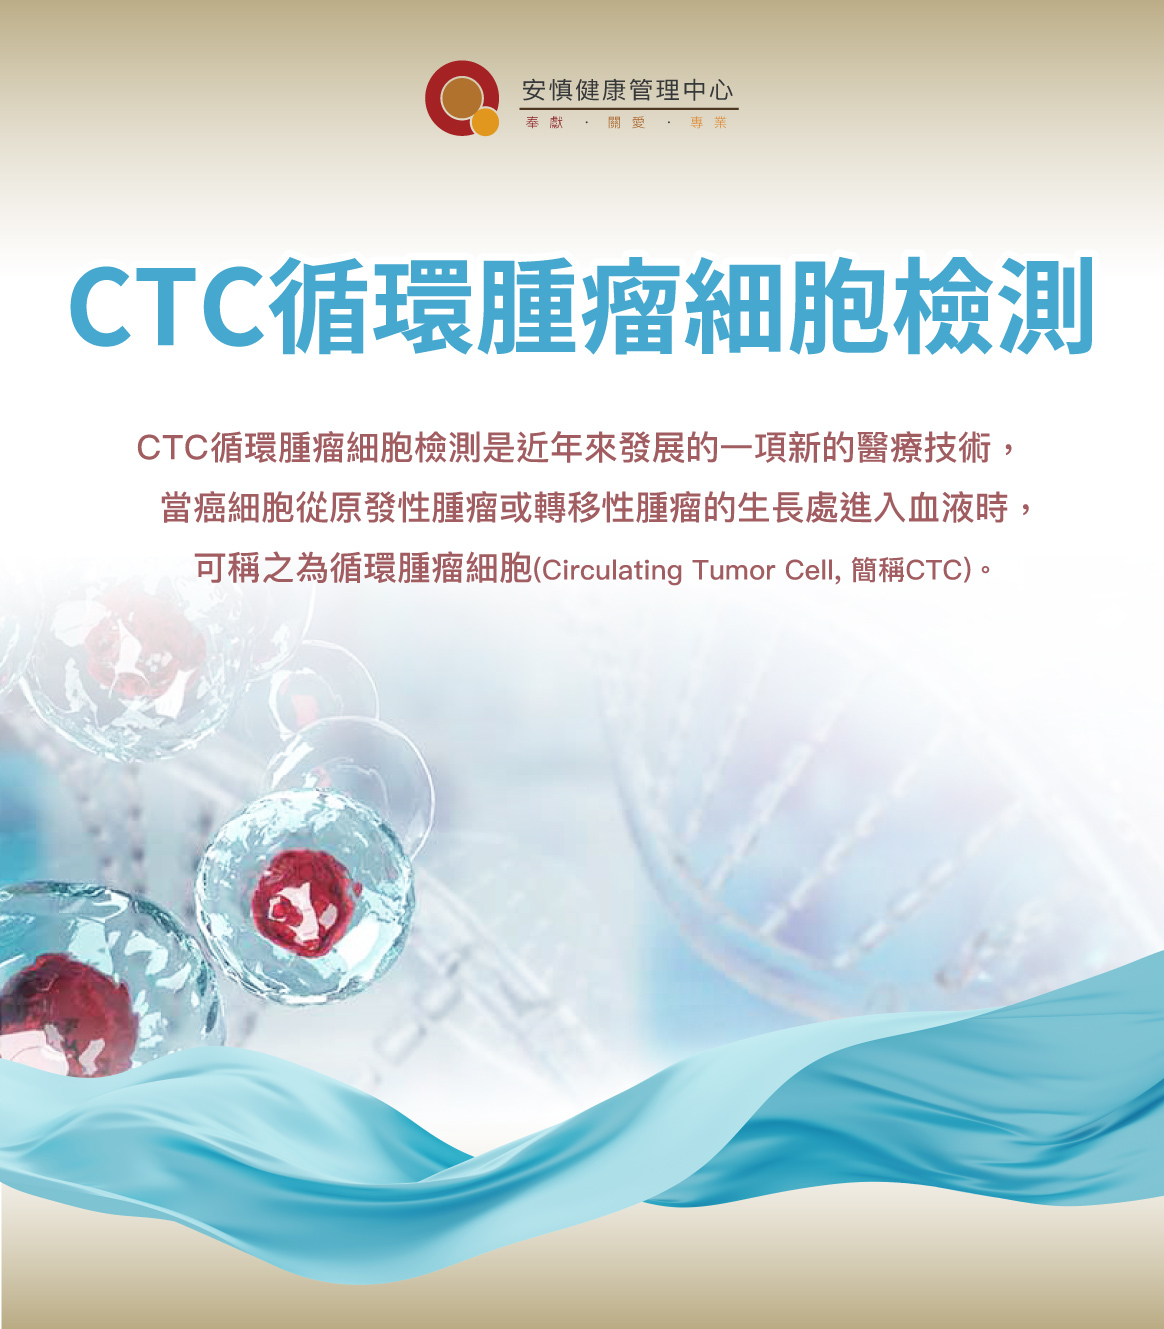 CTC循環腫瘤細胞檢測